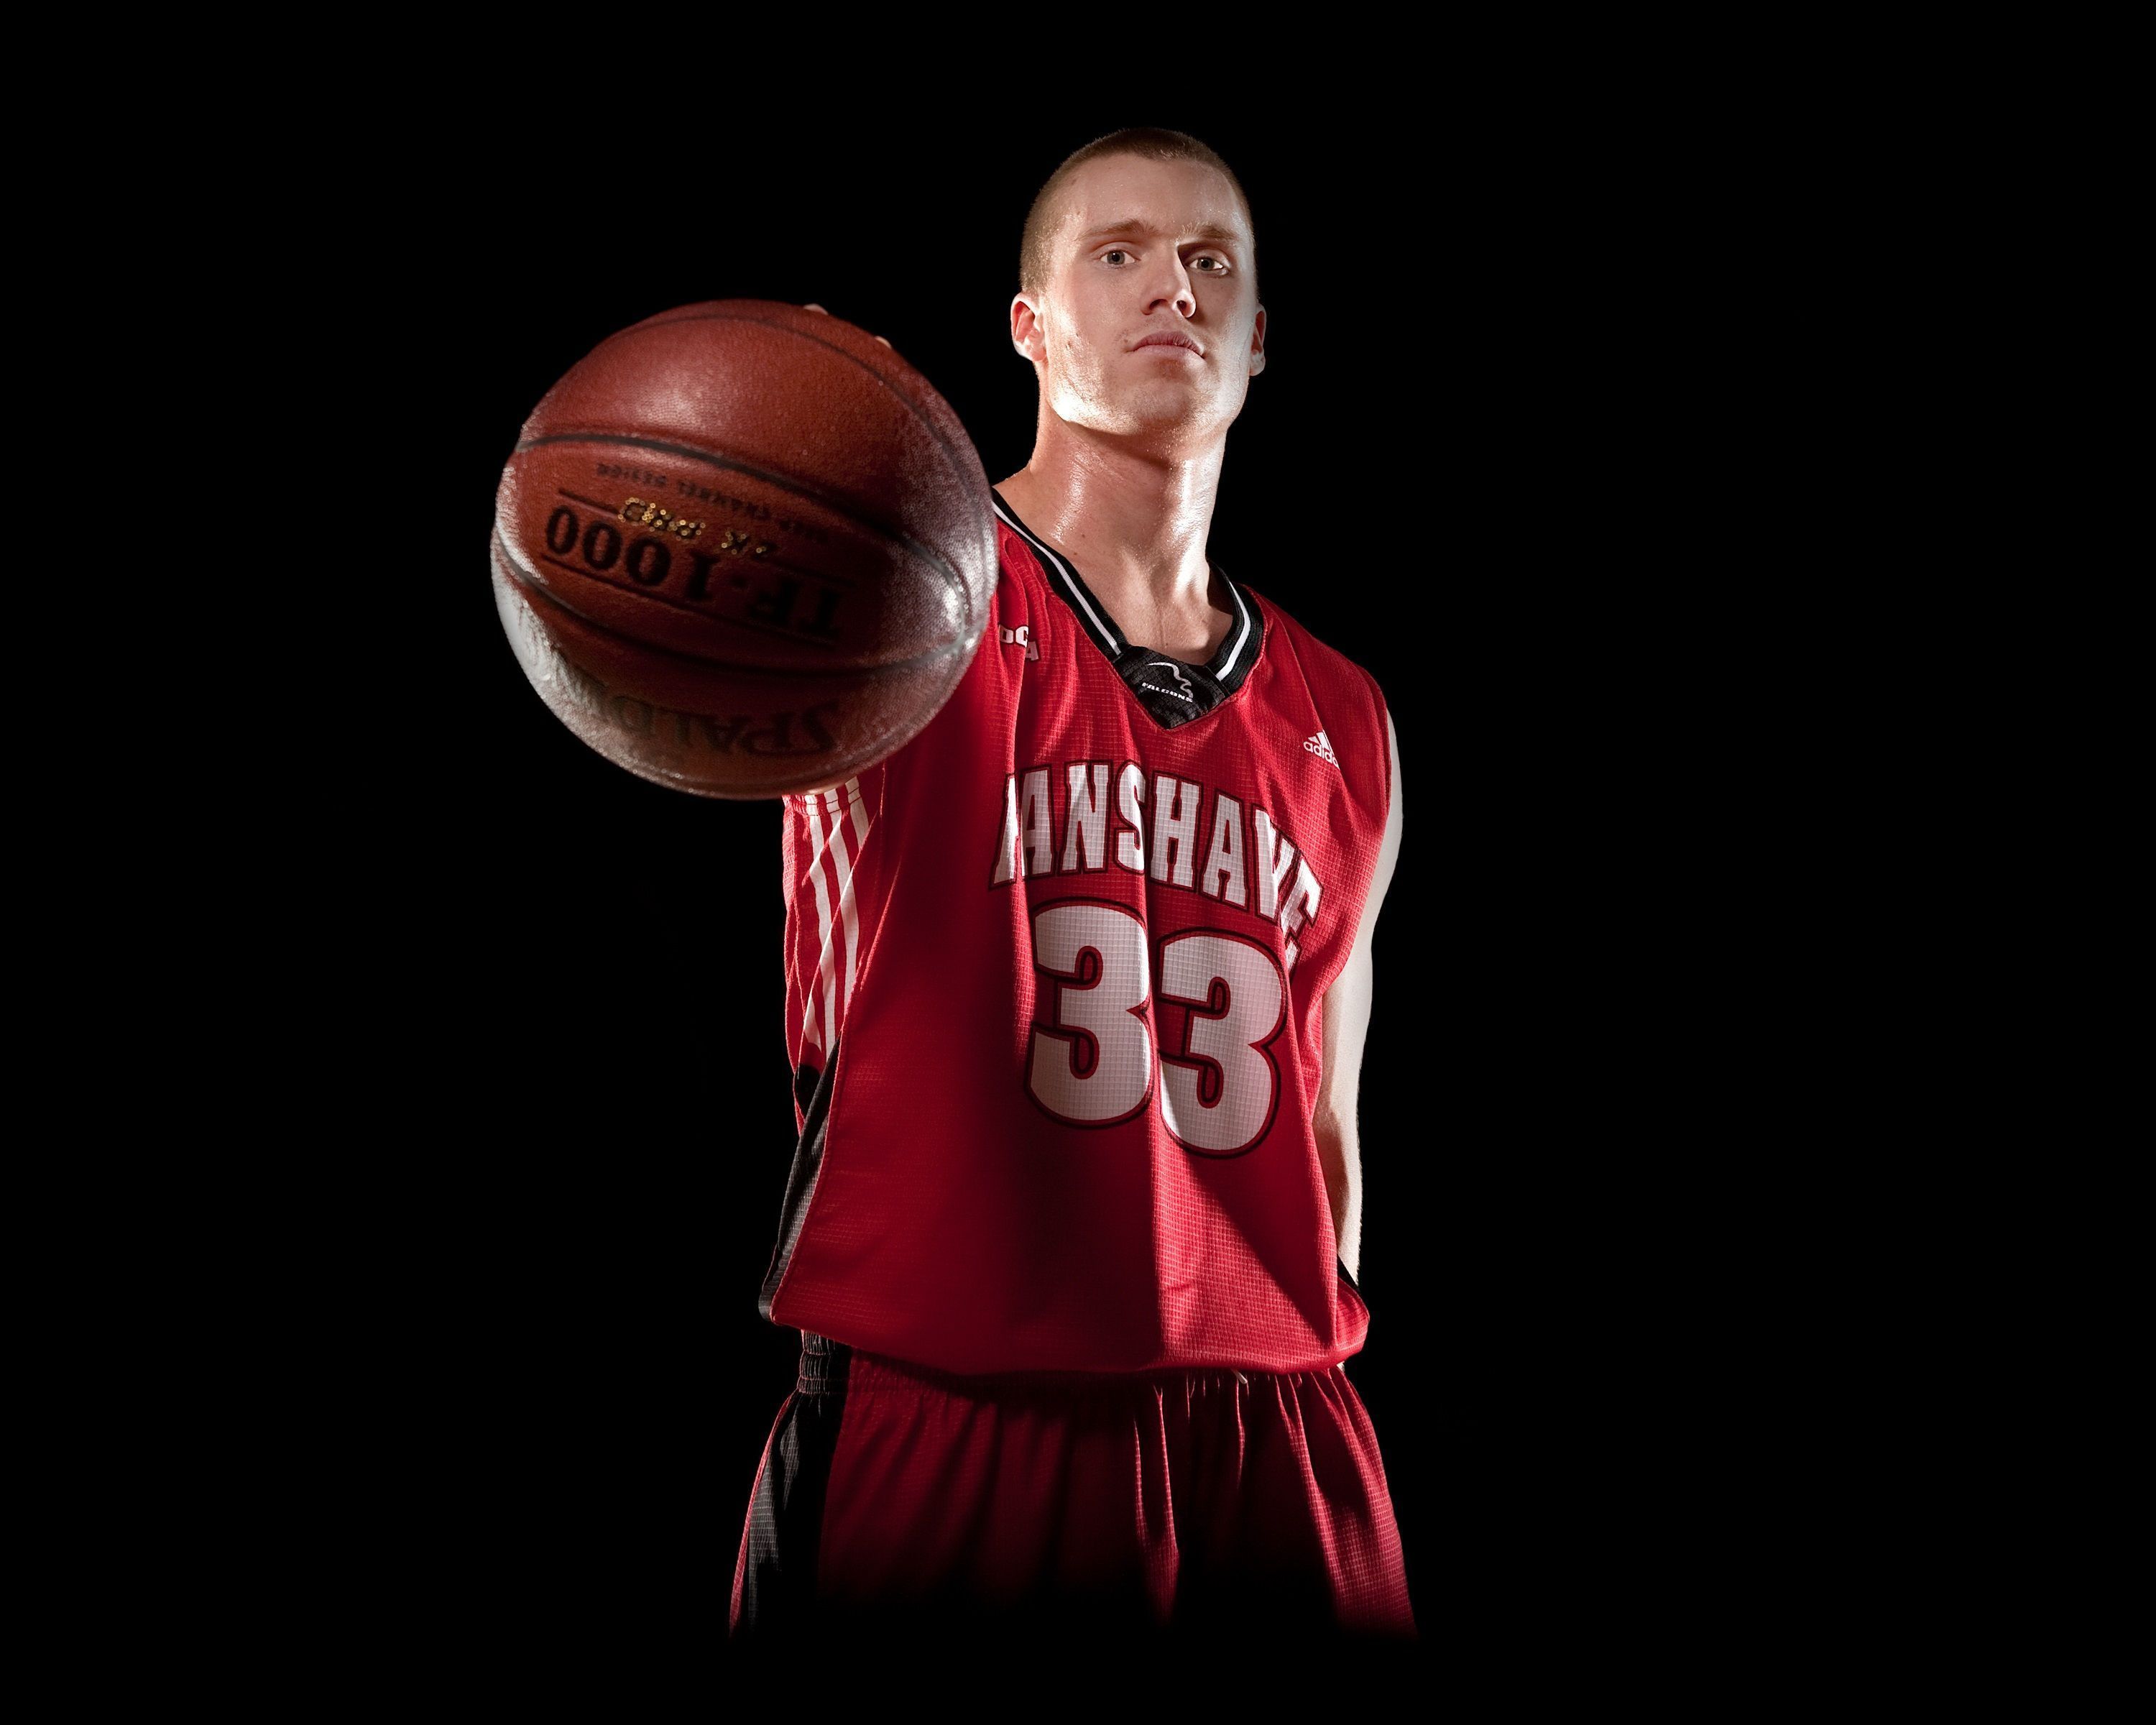 Basketball Players HD Wallpaper. Basketball Player Image. Cool